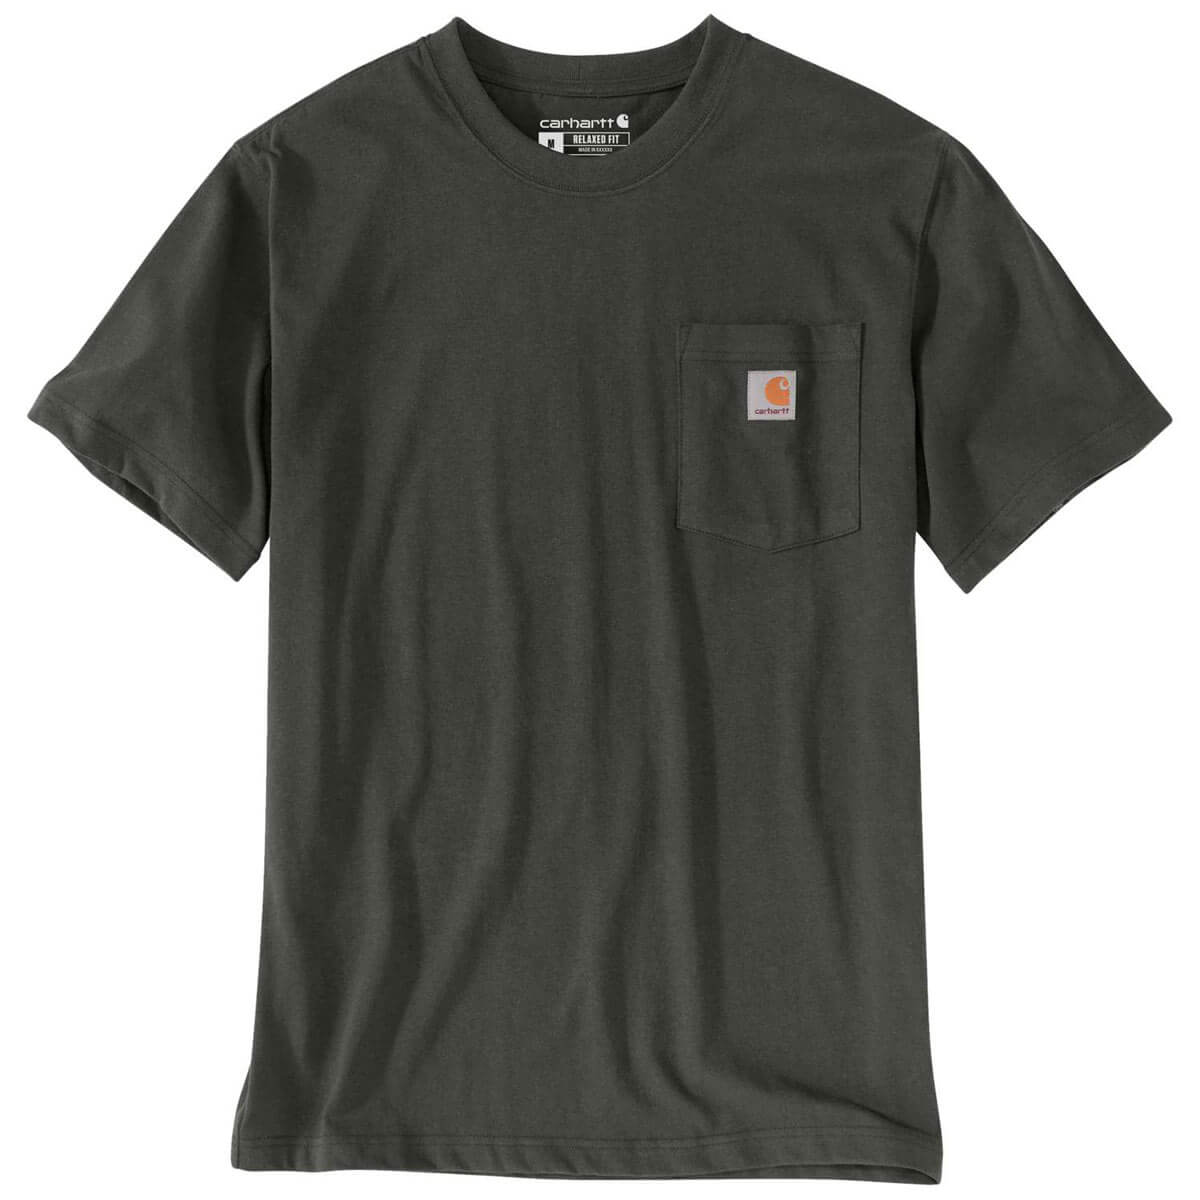 Carhartt T-Shirt mit Brusttasche - 24